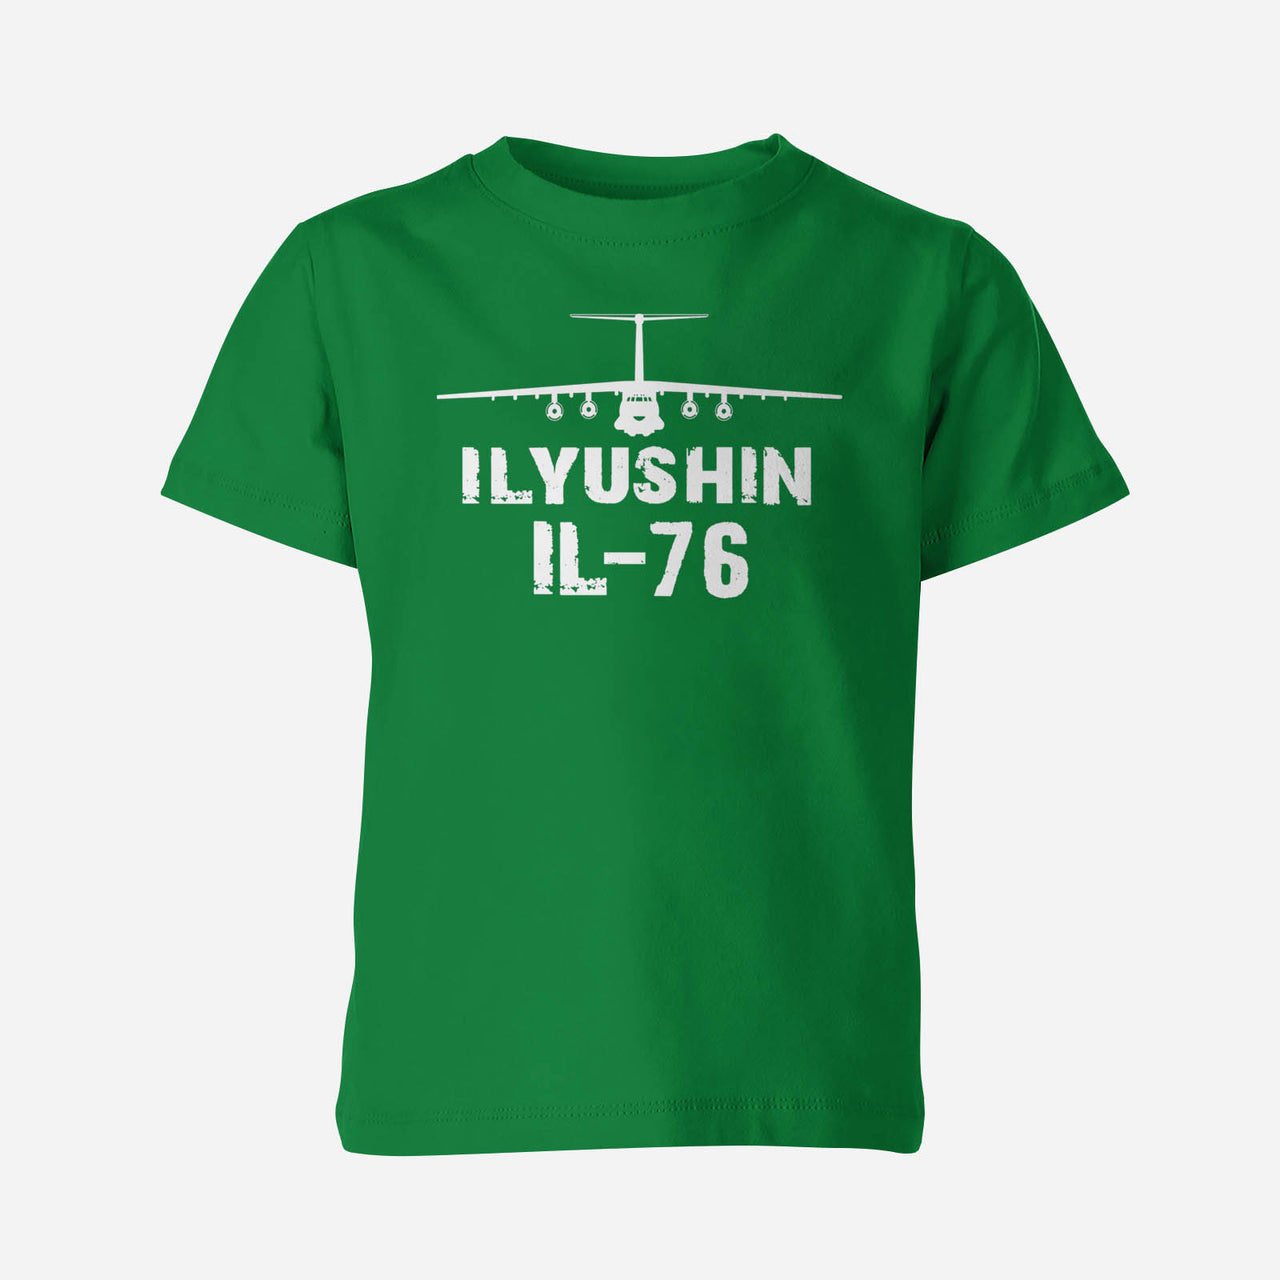 ILyushin IL-76 & Plane Designed Children T-Shirts